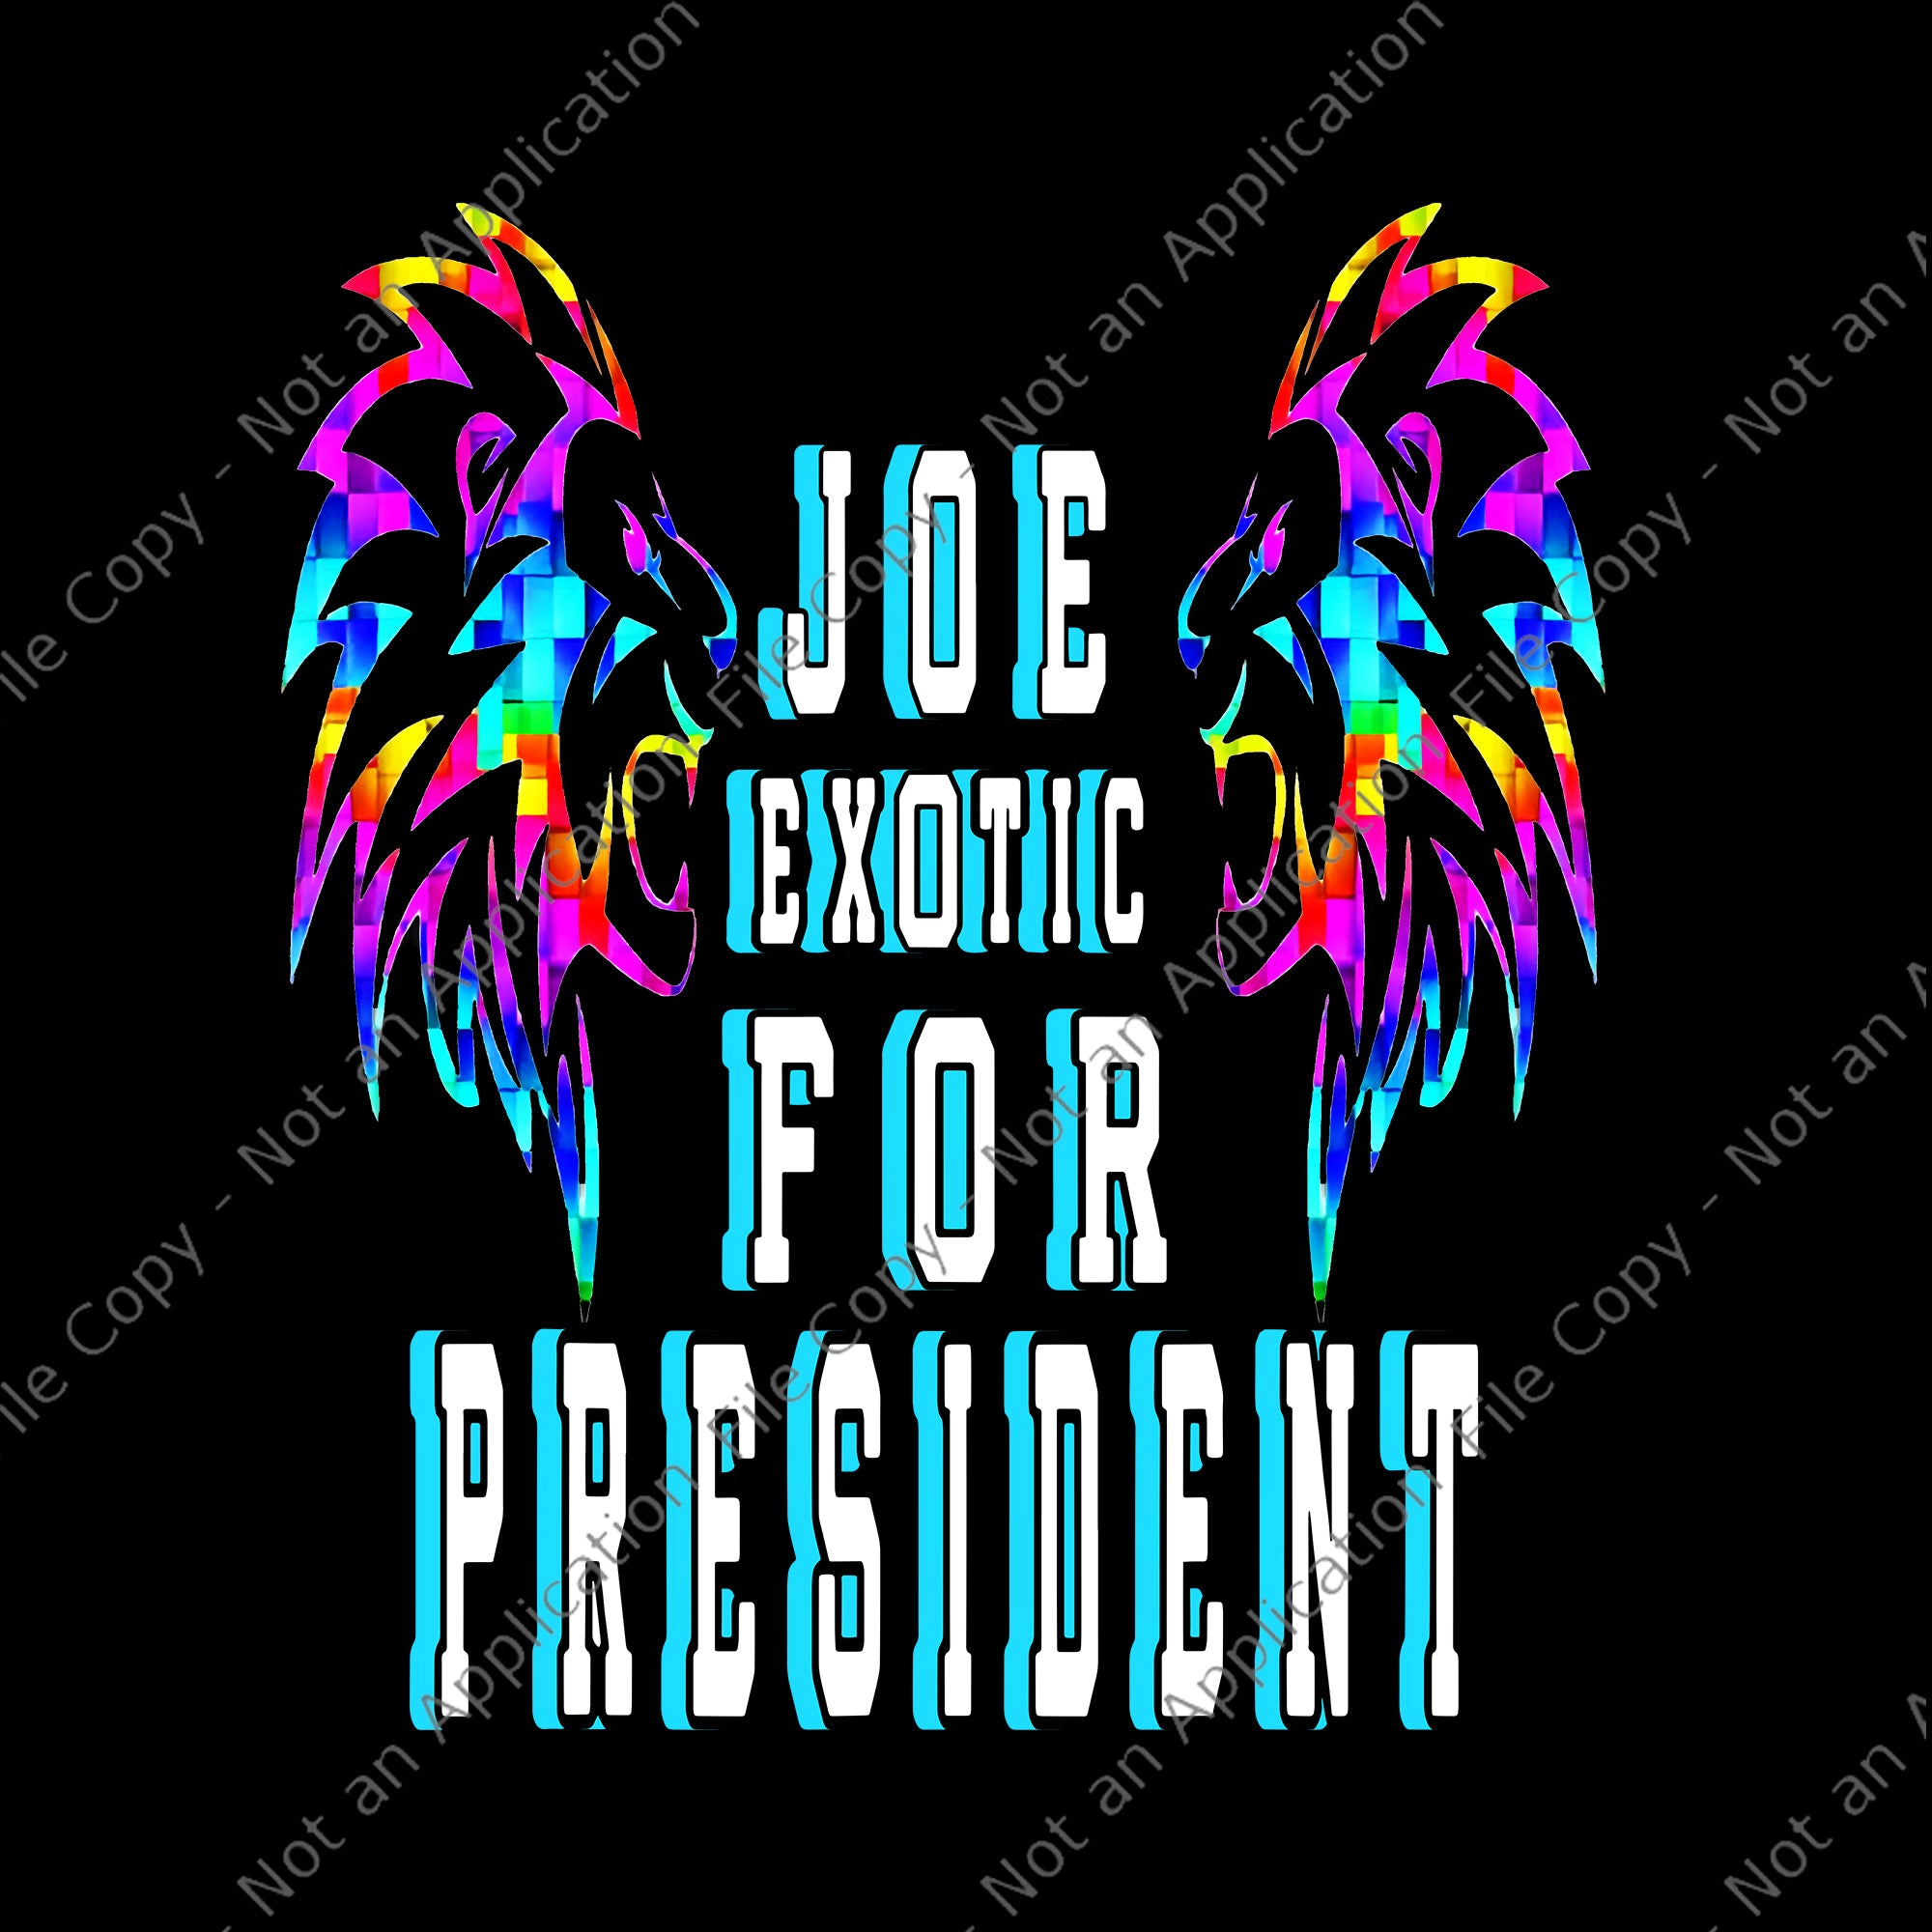 Joe exotic for president png, joe exotic for president, joe exotic for president vector, joe exotic for president design file